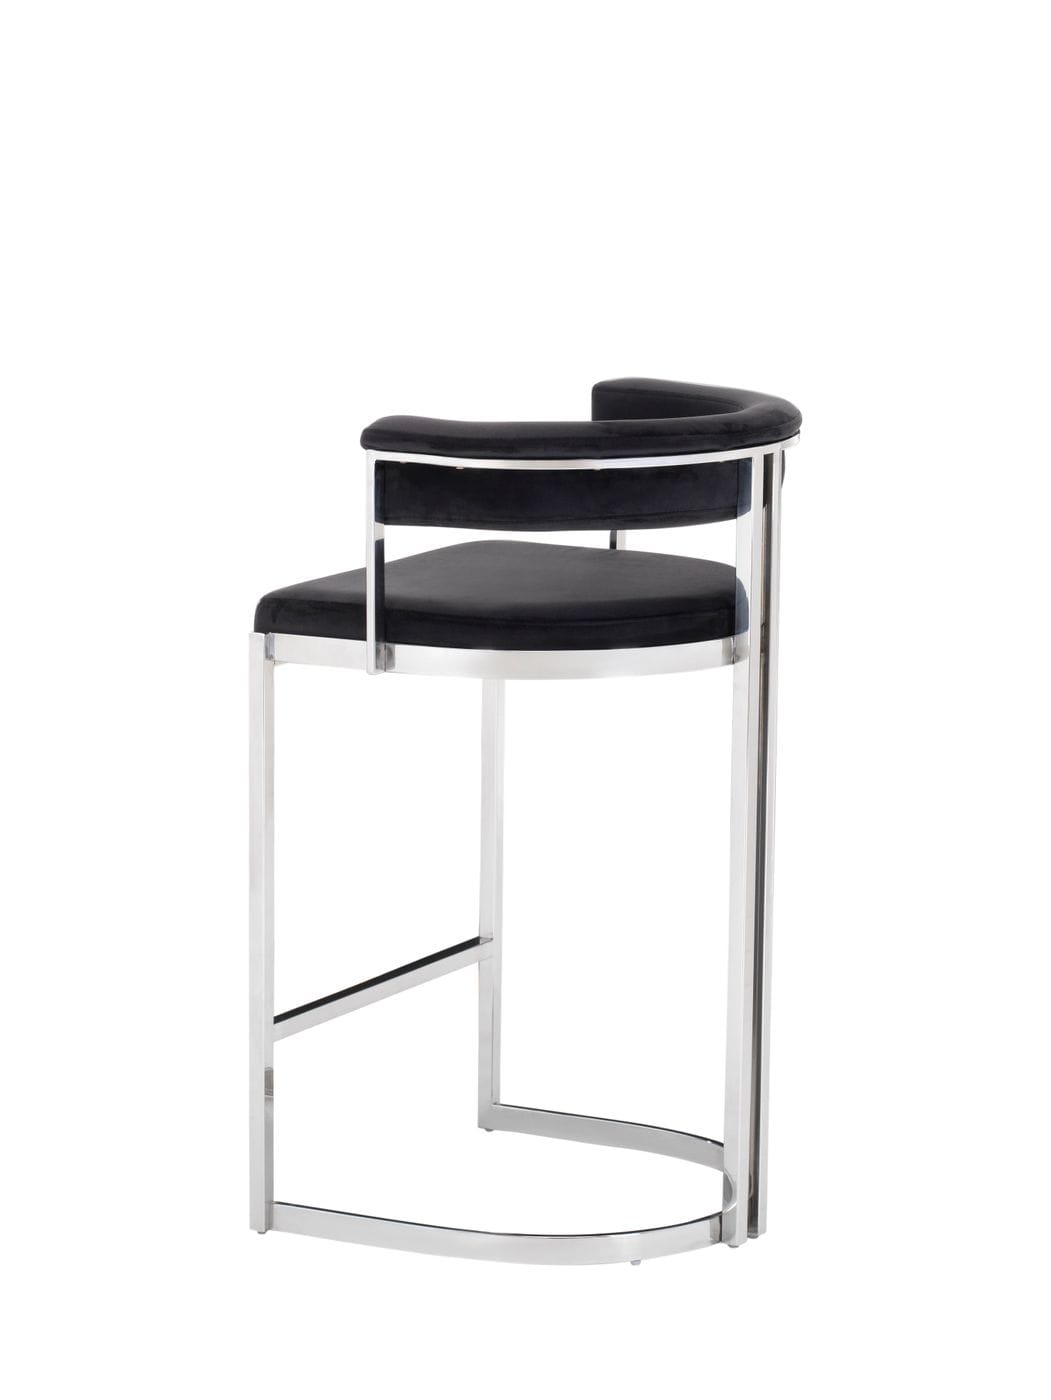 Modrest Munith - Modern Black Velvet & Stainless Steel Bar Chair-3